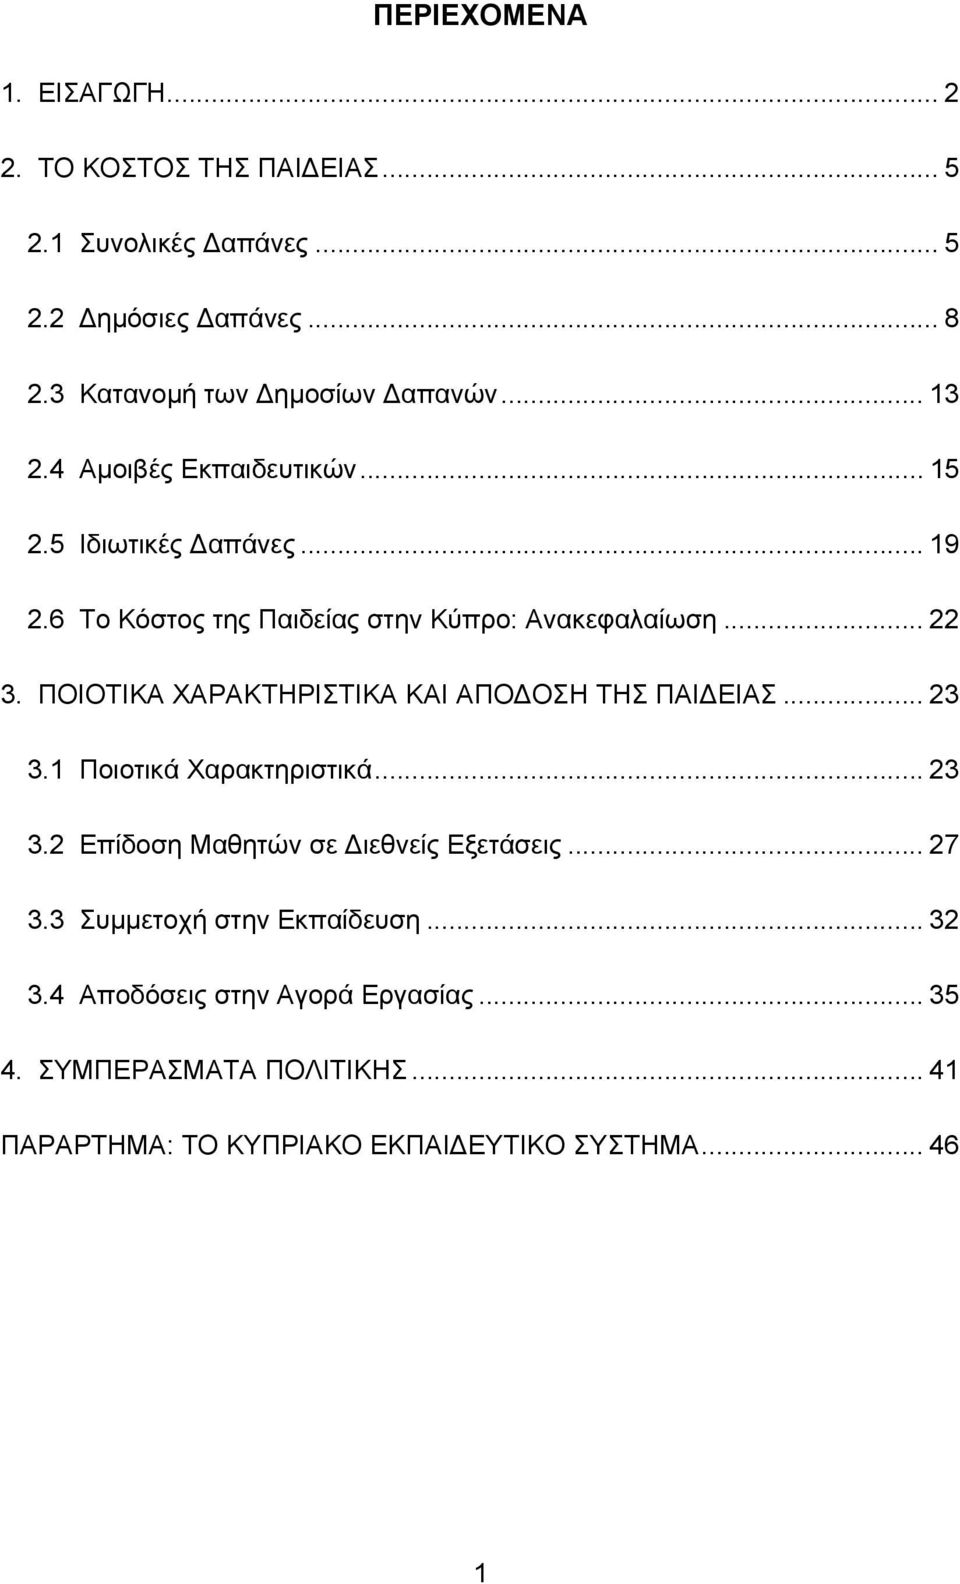 6 Το Κόστος της Παιδείας στην Κύπρο: Ανακεφαλαίωση... 22 3. ΠΟΙΟΤΙΚΑ ΧΑΡΑΚΤΗΡΙΣΤΙΚΑ ΚΑΙ ΑΠΟ ΟΣΗ ΤΗΣ ΠΑΙ ΕΙΑΣ... 23 3.